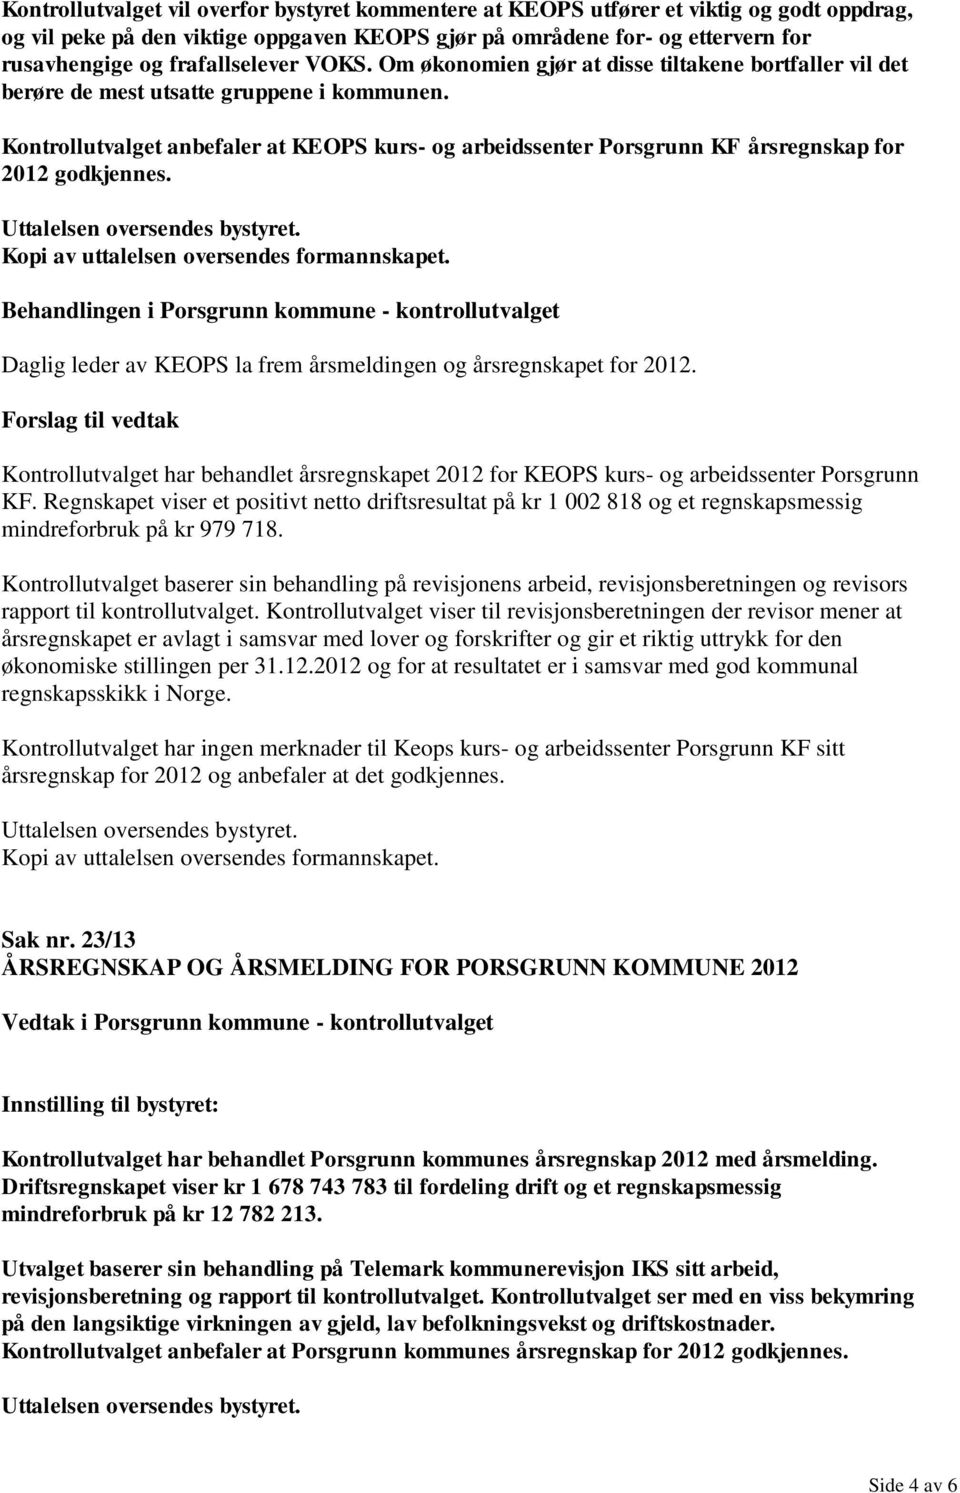 Kontrollutvalget anbefaler at KEOPS kurs- og arbeidssenter Porsgrunn KF årsregnskap for 2012 godkjennes. Kopi av uttalelsen oversendes formannskapet.